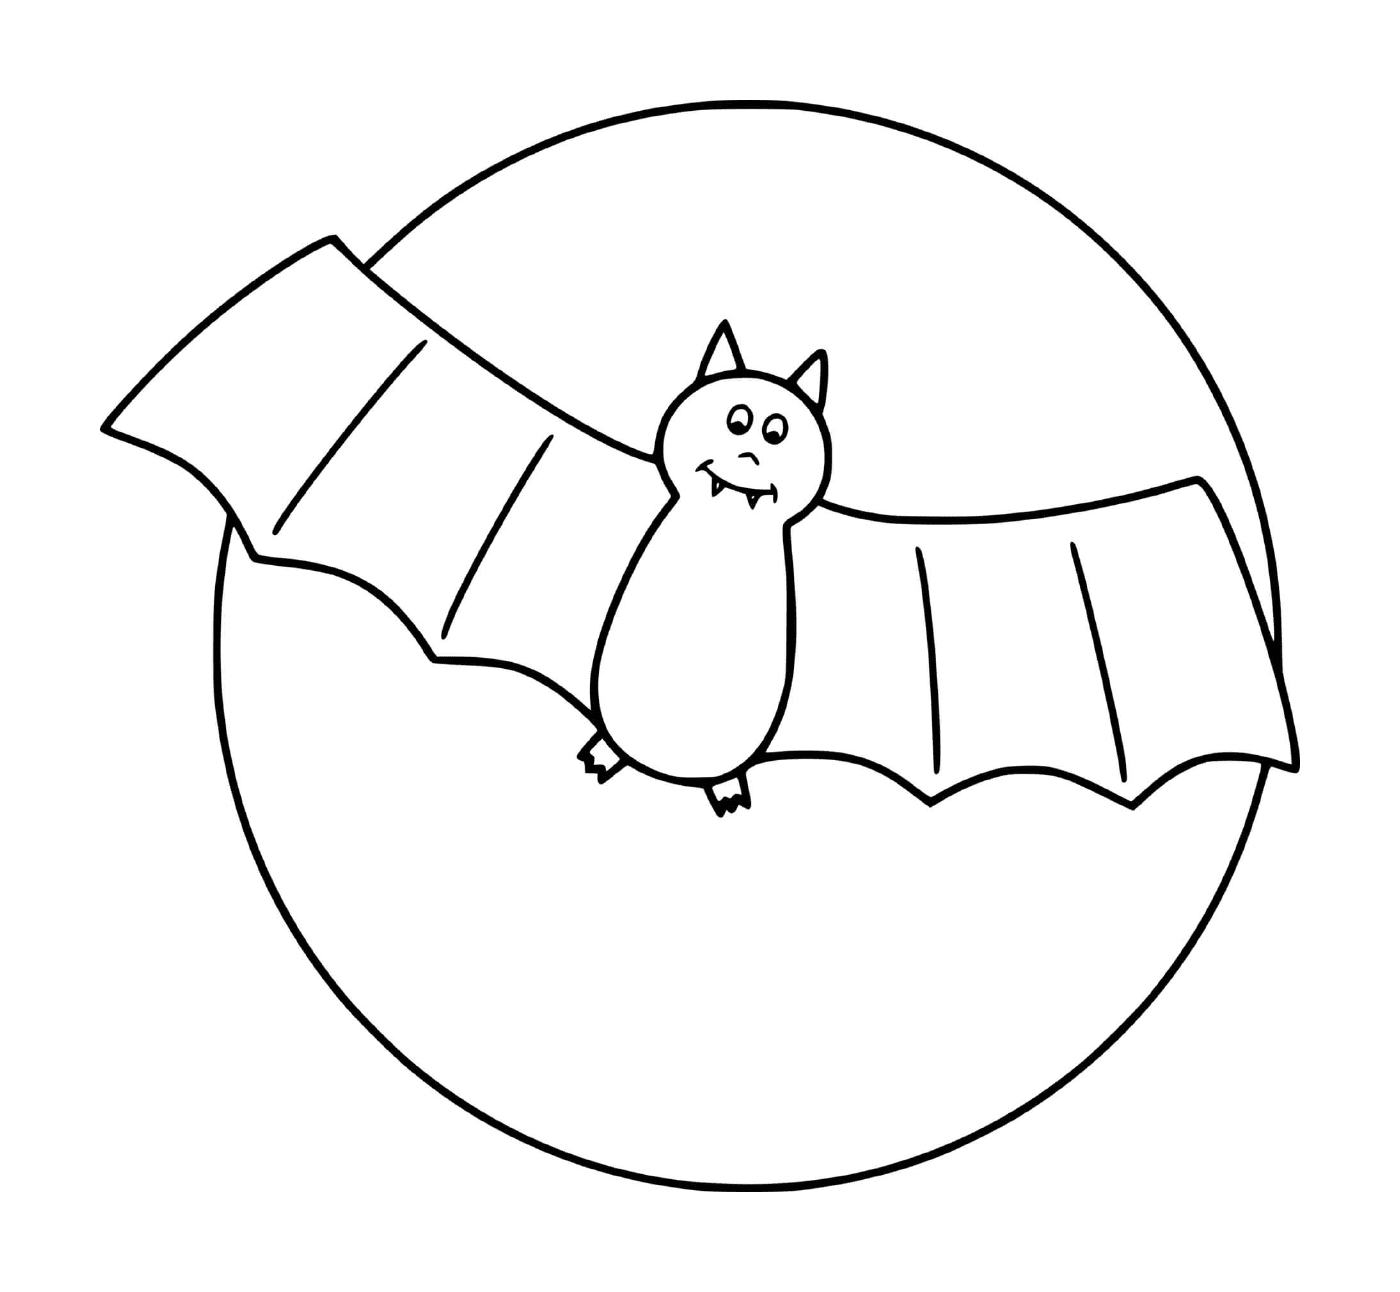  pipistrello singolo in pieno volo con la luna 